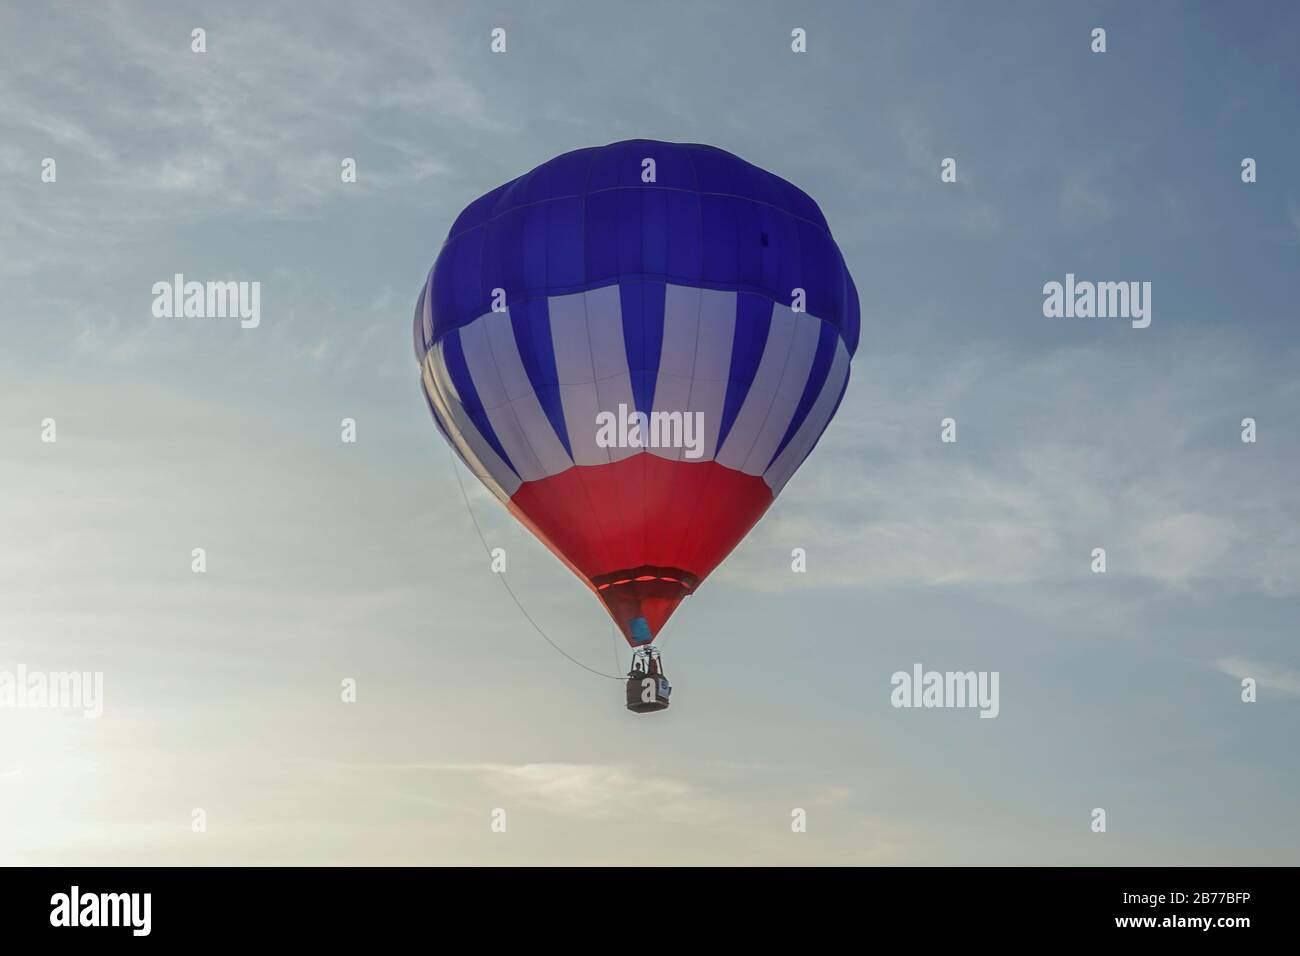 Un festival de montgolfière comprend des parapentes, des ballons à air chaud et d'autres formes de transports aériens. Le lancement du ballon à air chaud étant l'événement principal. Banque D'Images